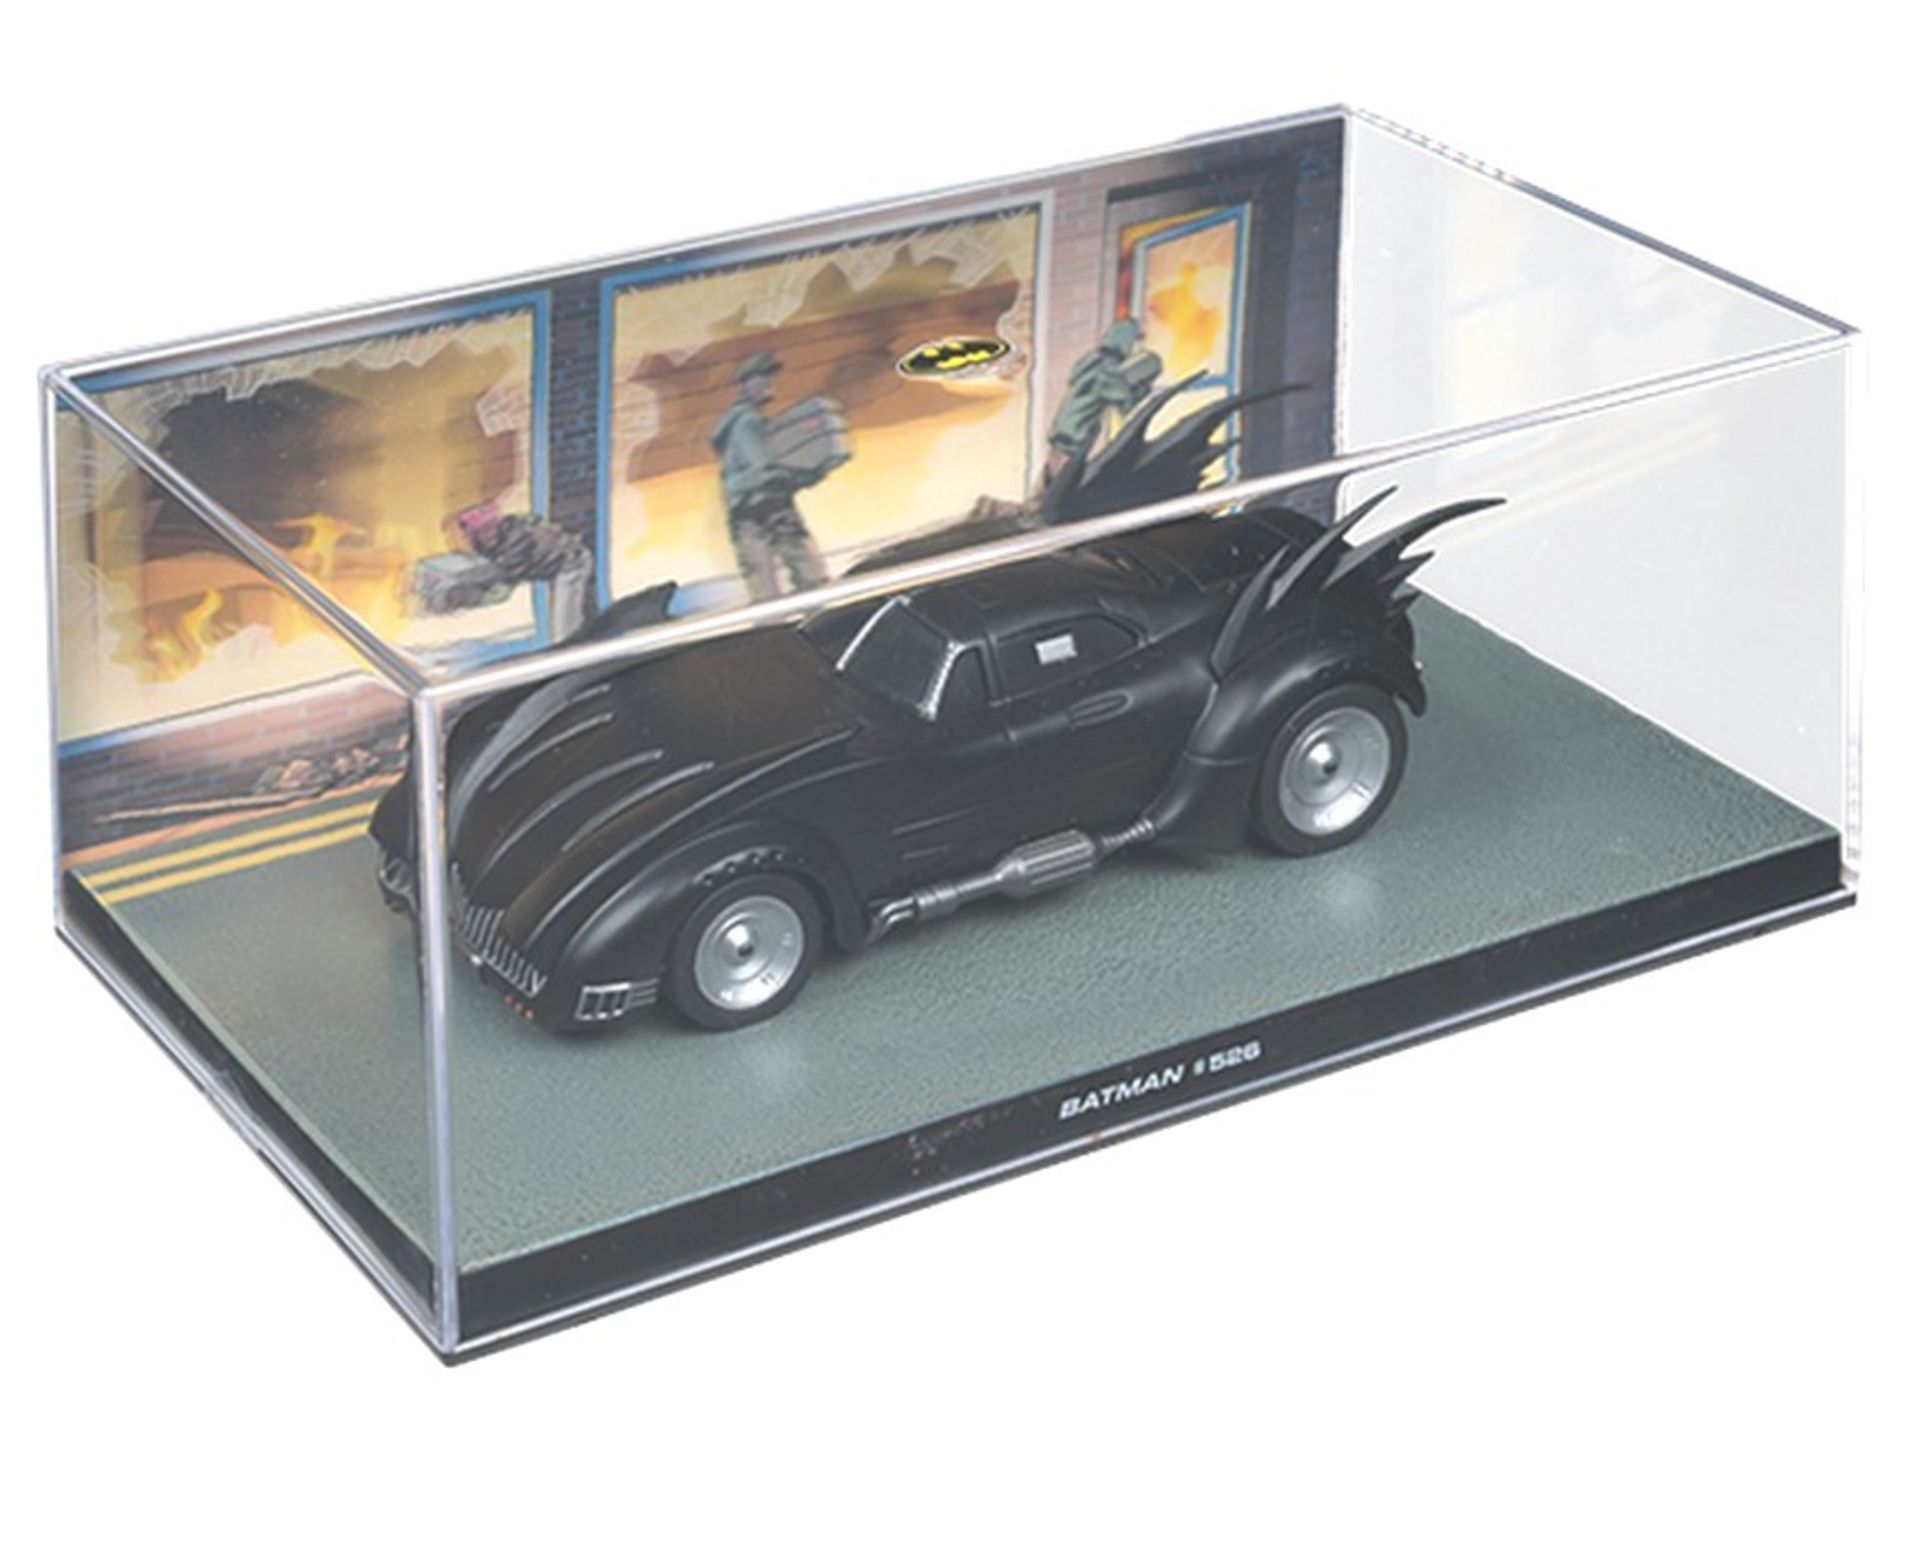 Batman 526 batmobile collectors item